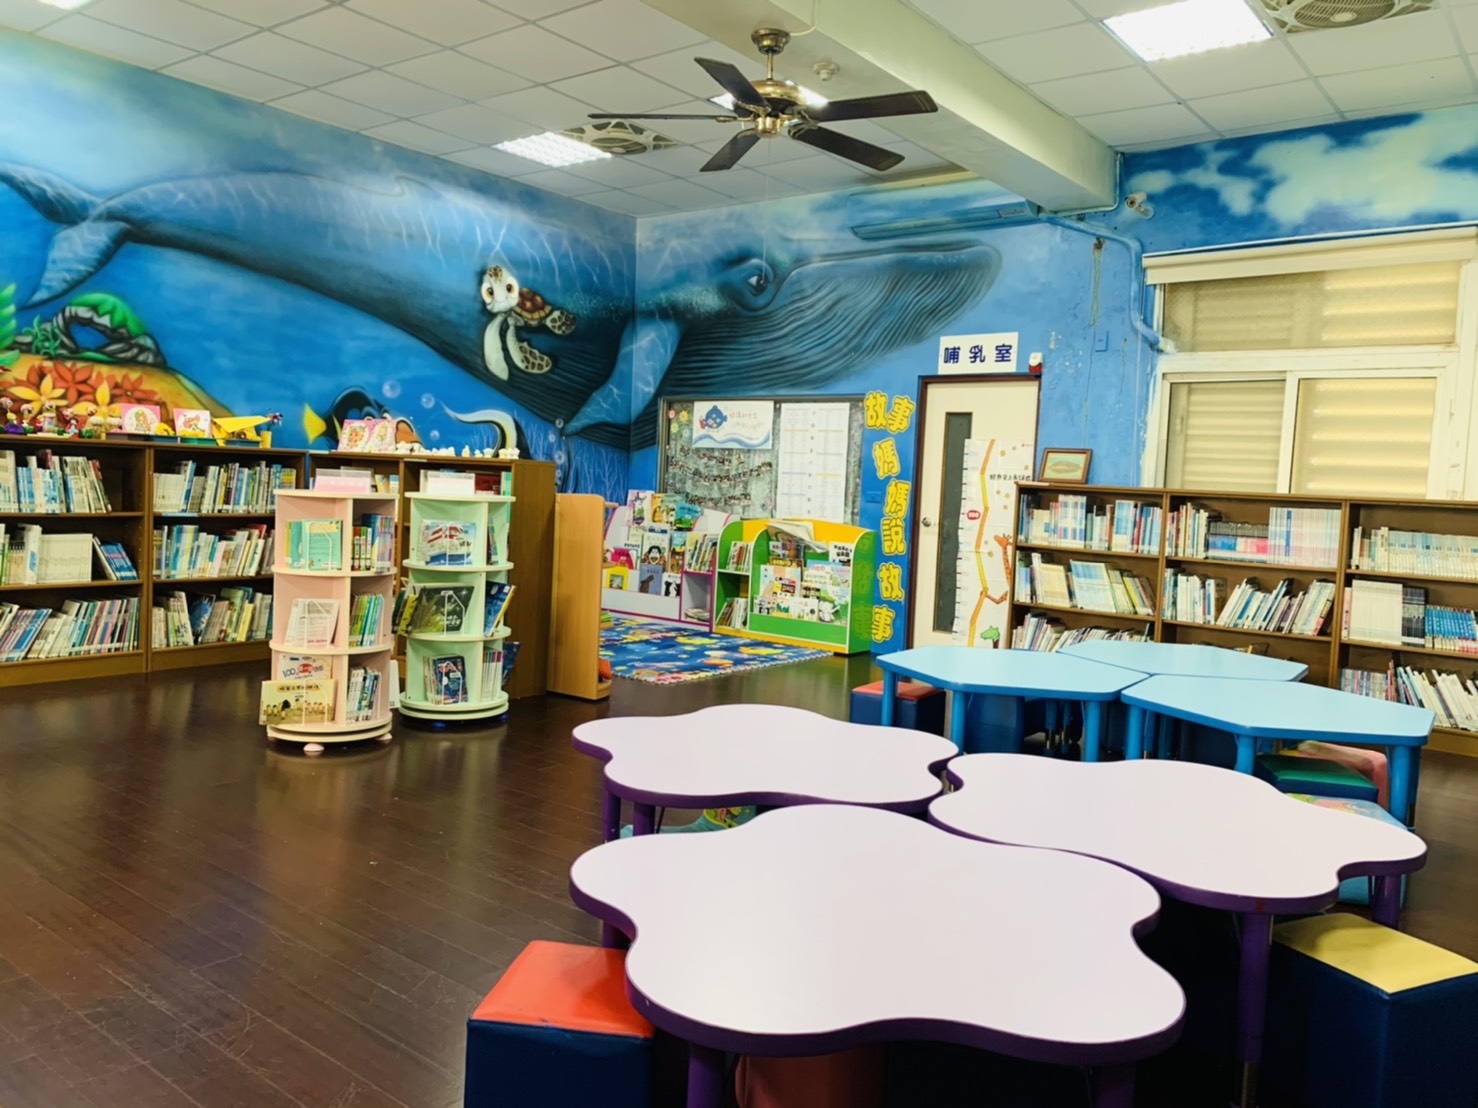 一樓兒童閱覽區